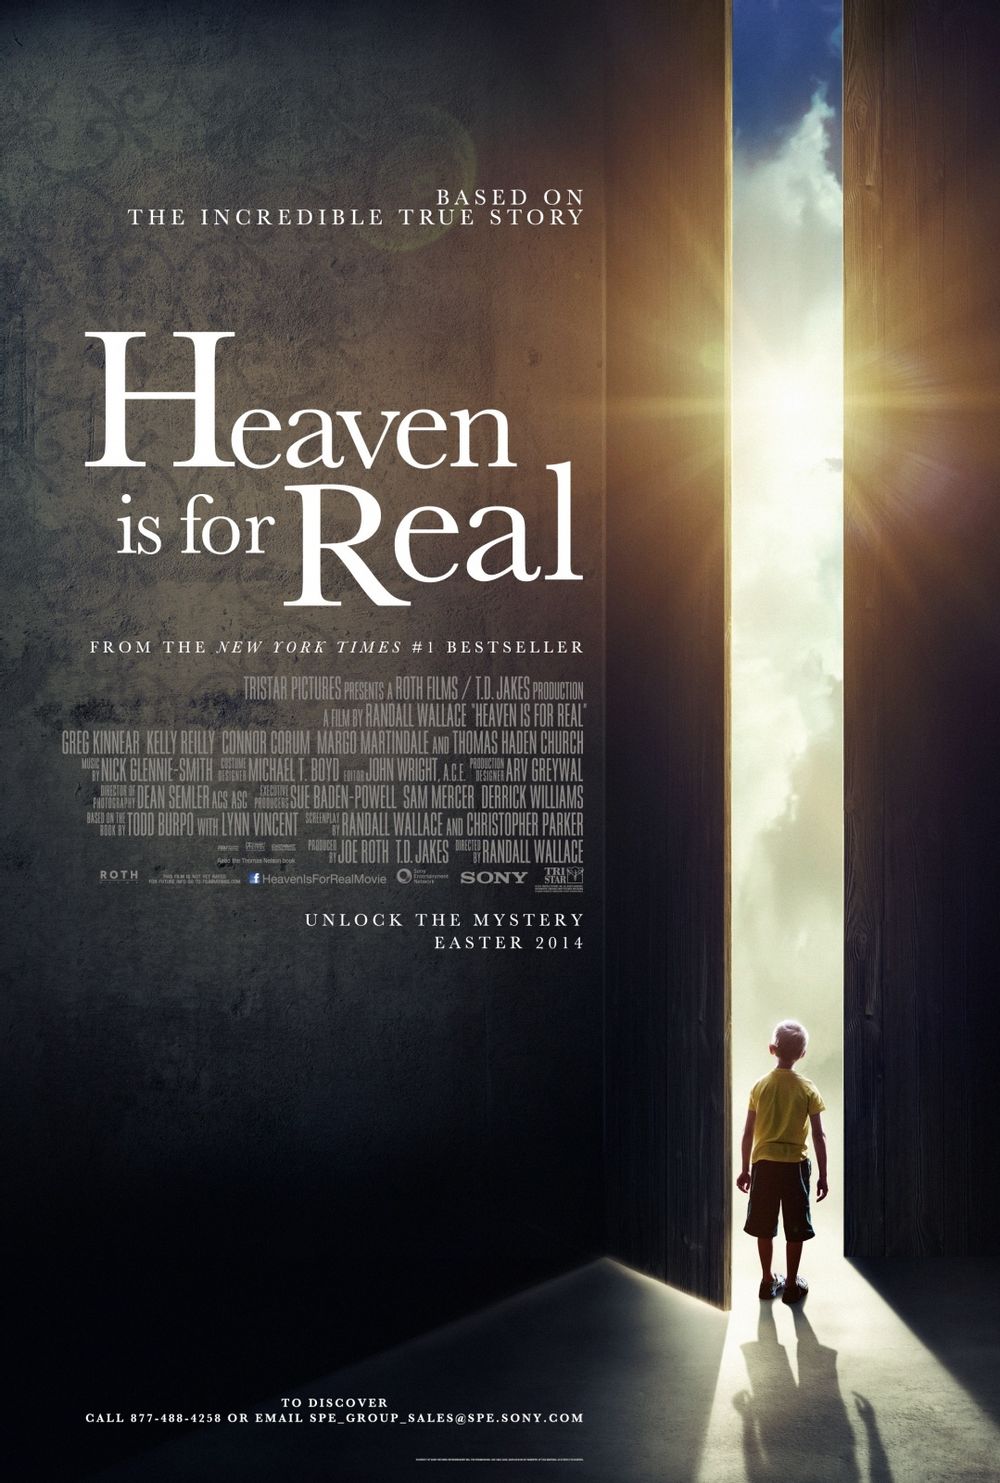 https://mediaproxy.tvtropes.org/width/1000/https://static.tvtropes.org/pmwiki/pub/images/heaven_is_for_real_2014_movie_poster.jpg